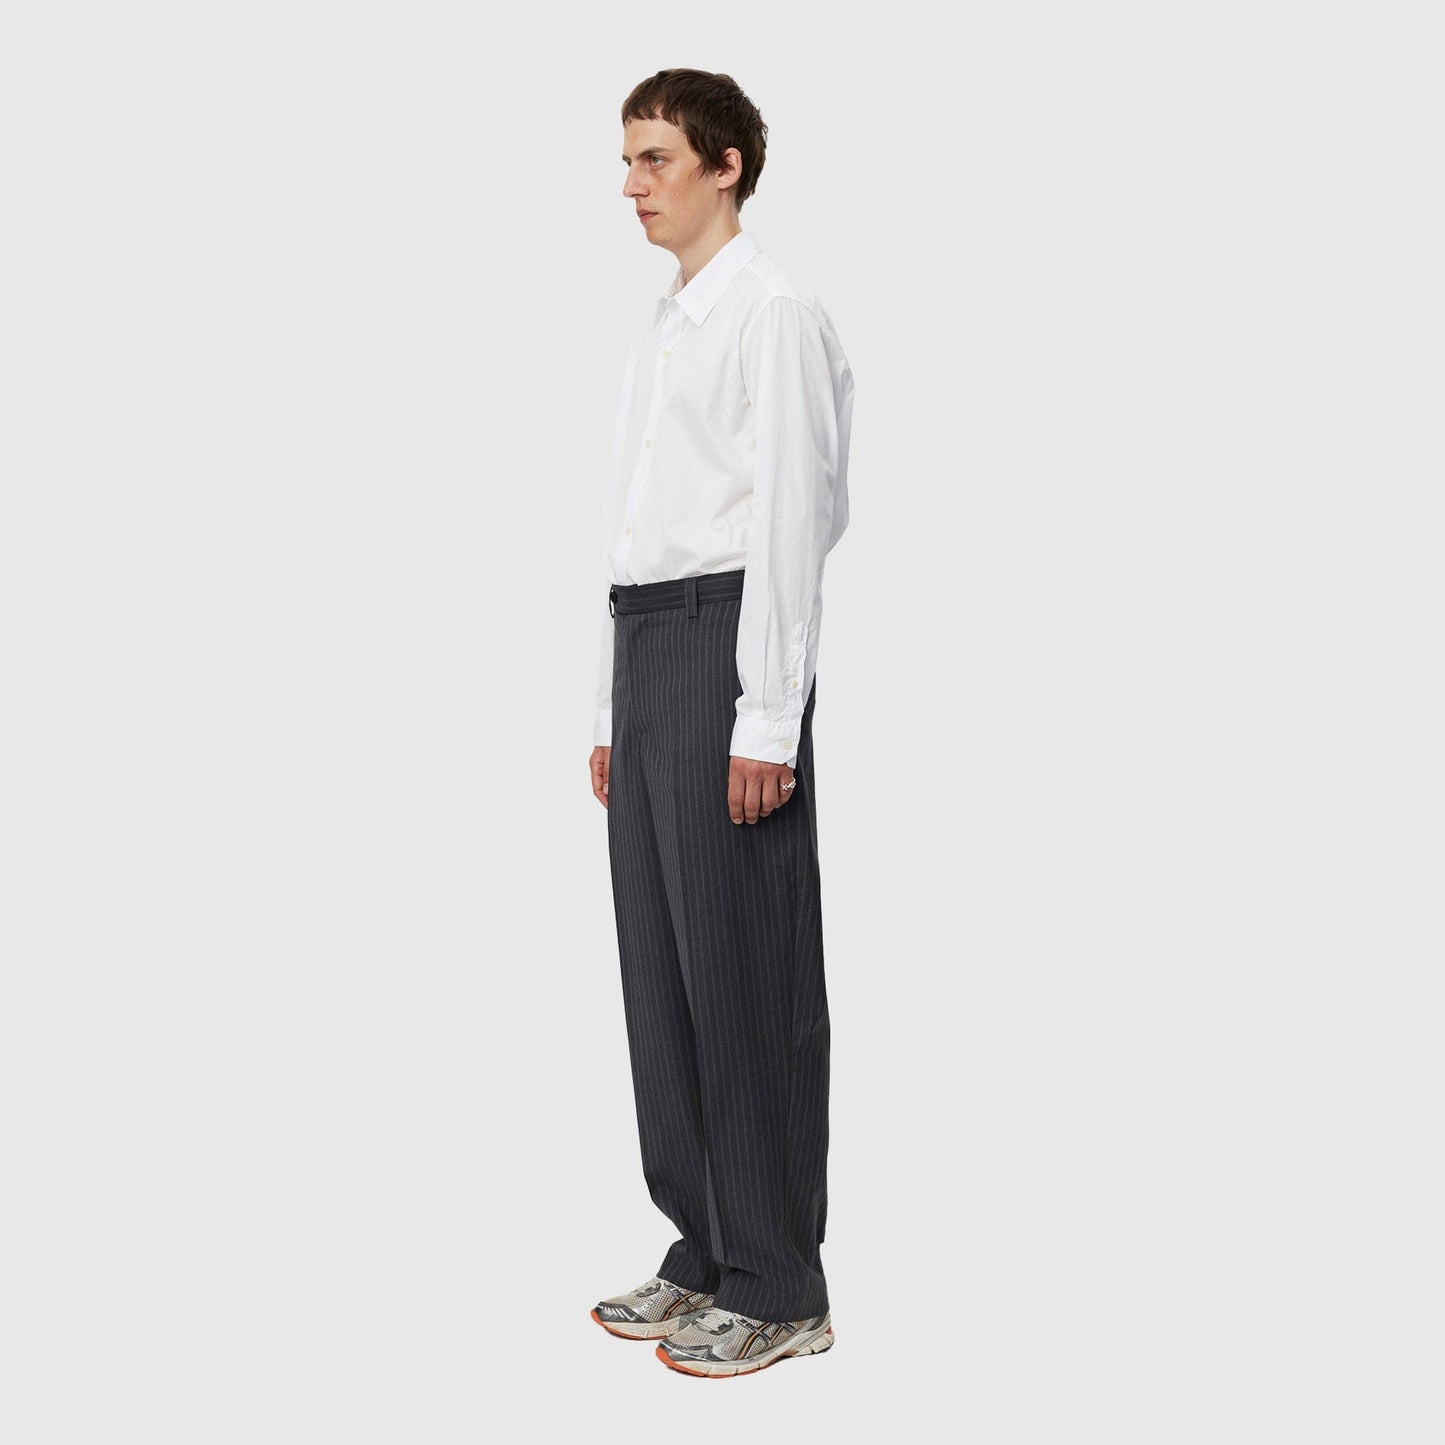 mfpen Studio Trousers - Grey Pinstripe Pants mfpen 